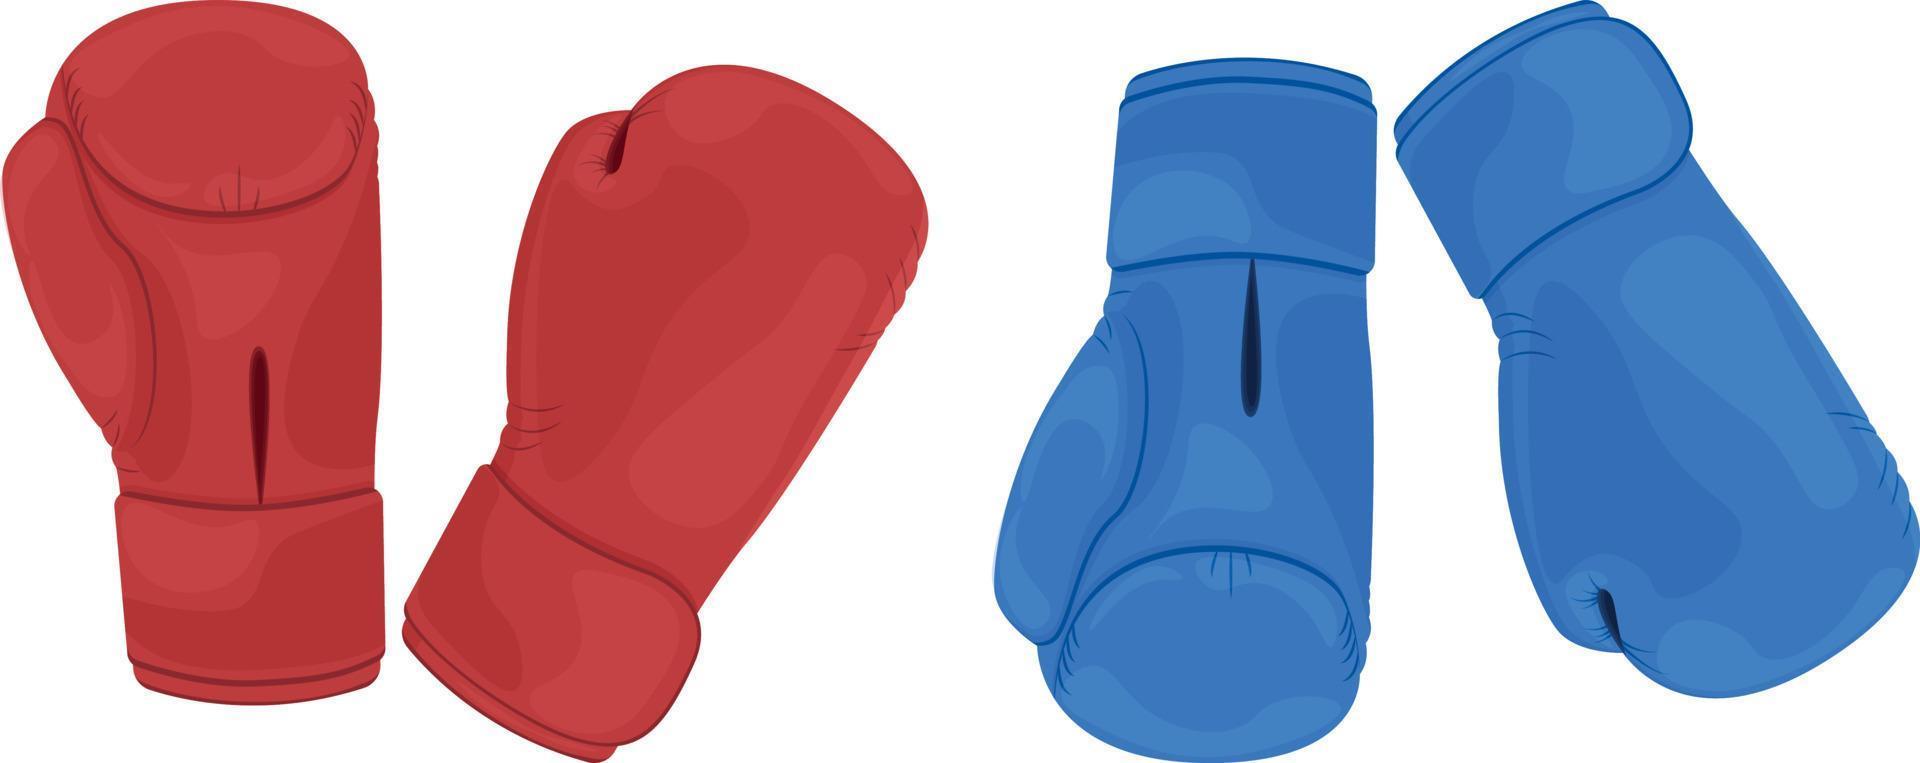 ein Sportset bestehend aus zwei Paar roter und blauer Boxhandschuhe. Boxhandschuhe, um Ihre Hände vor Schlägen zu schützen. Sportgeräte für Boxen, Kickboxen und andere Kampfsportarten. Vektor-Illustration vektor